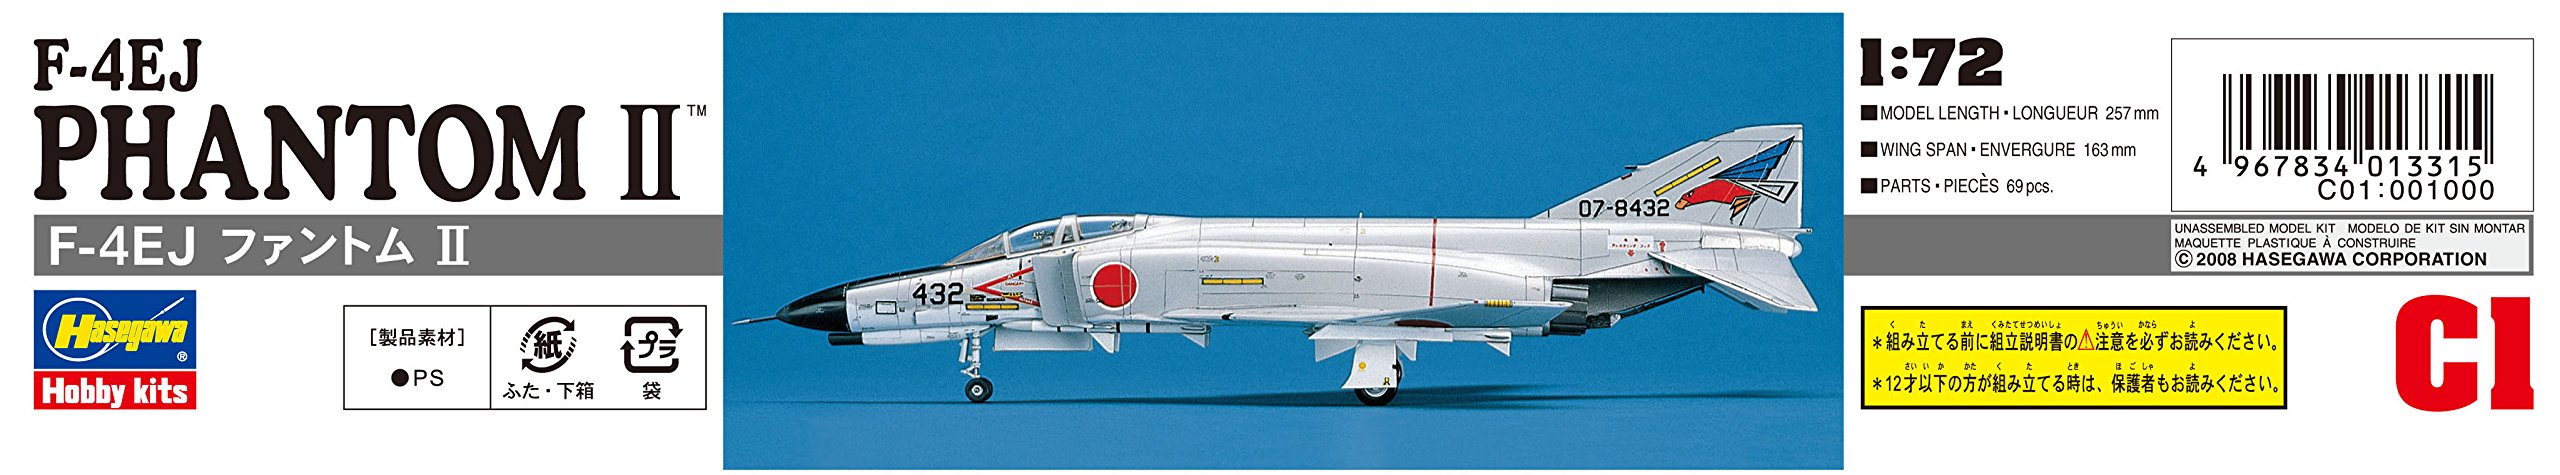 HASEGAWA 1/72 F-4Ej Phantom Ii J.A.S.D.F. Interceptor Plastic Model